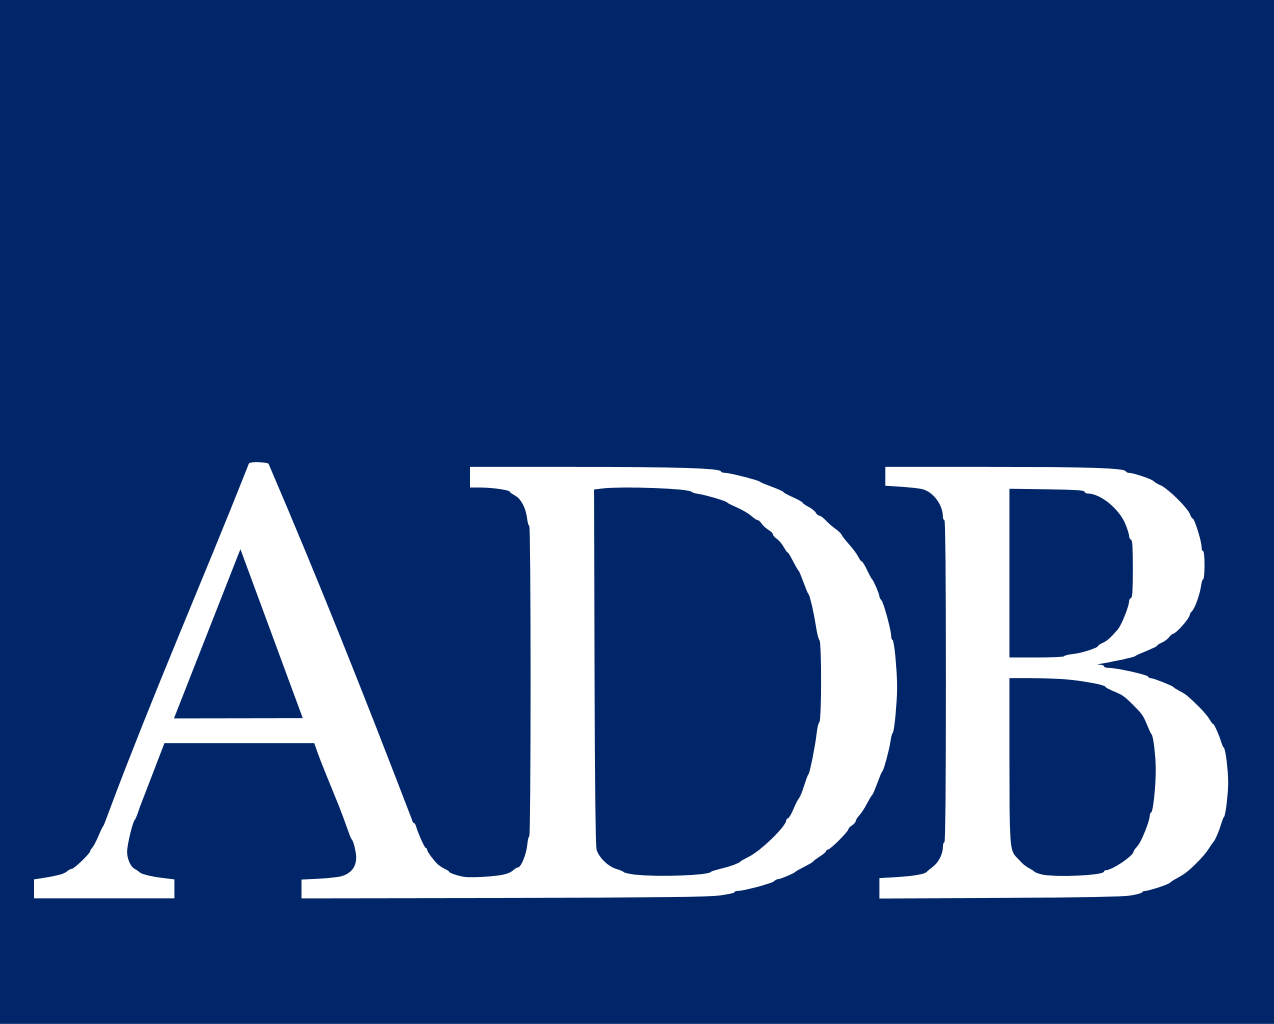 Азиатский банк развития